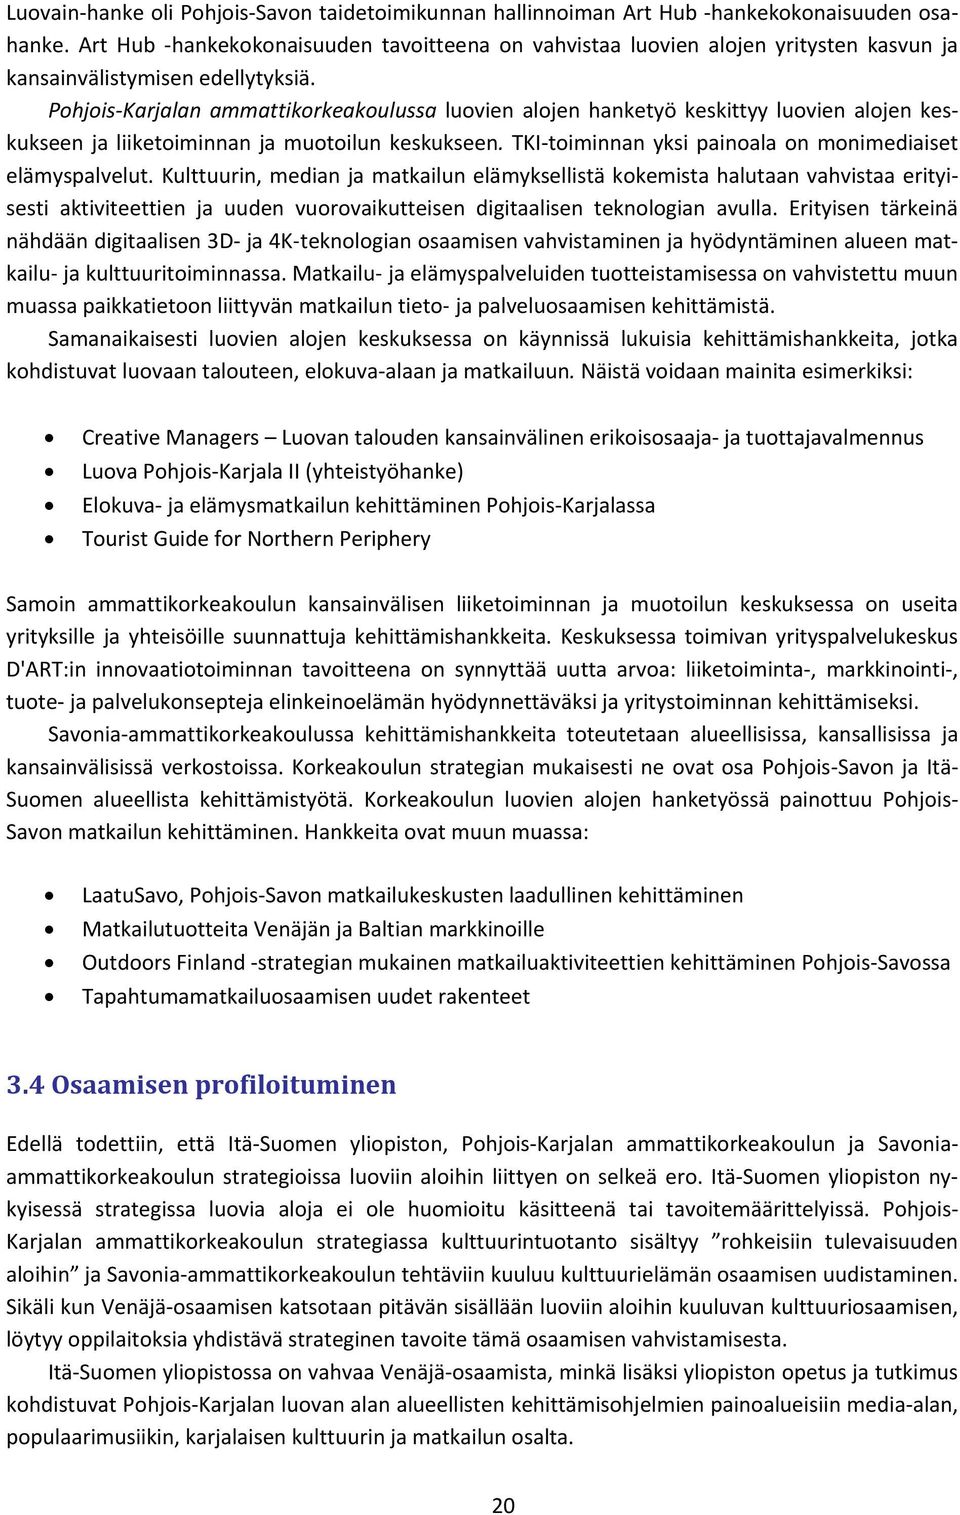 Pohjois Karjalan ammattikorkeakoulussa luovien alojen hanketyö keskittyy luovien alojen keskukseen ja liiketoiminnan ja muotoilun keskukseen.